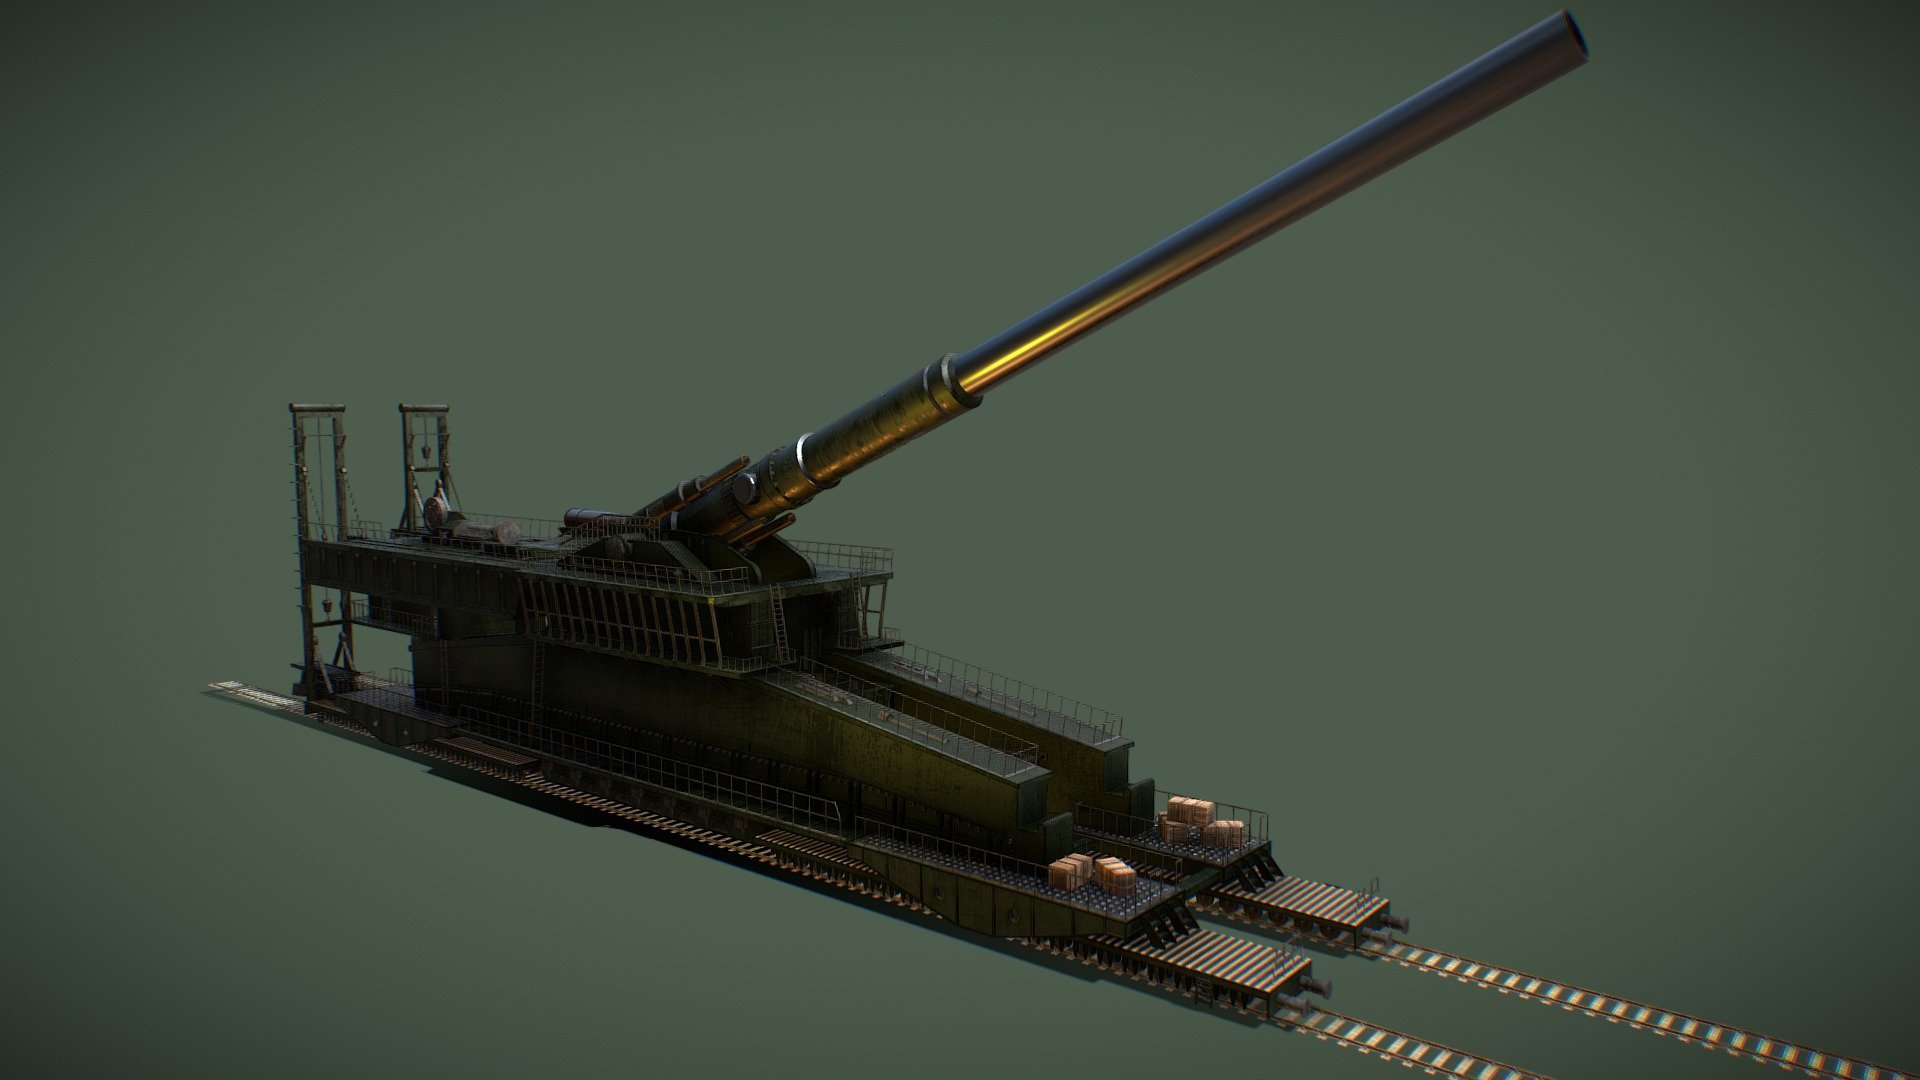 Schwerer Gustav artillery, 3D CAD Model Library